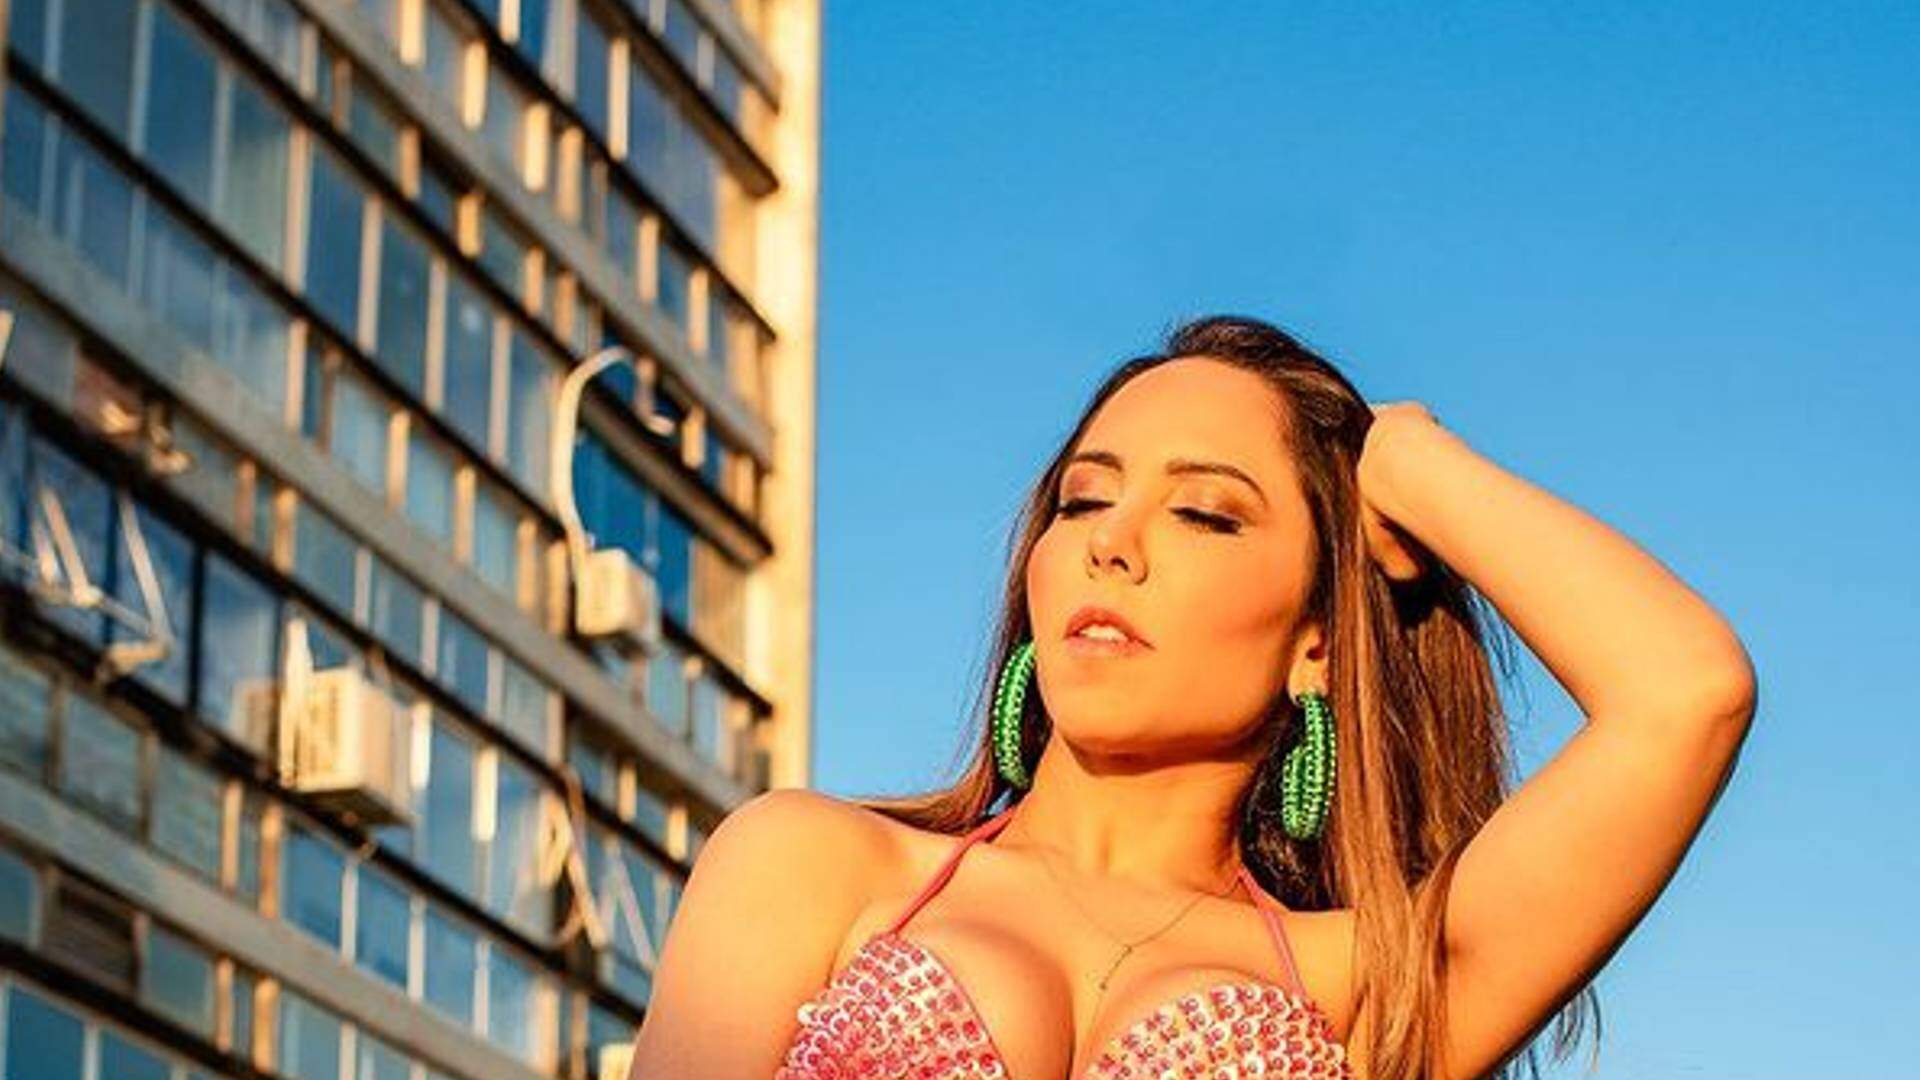 Mulher Melão tira a camisa em público e esquece que deixou a calça aberta: “Vai gerar trânsito” - Metropolitana FM